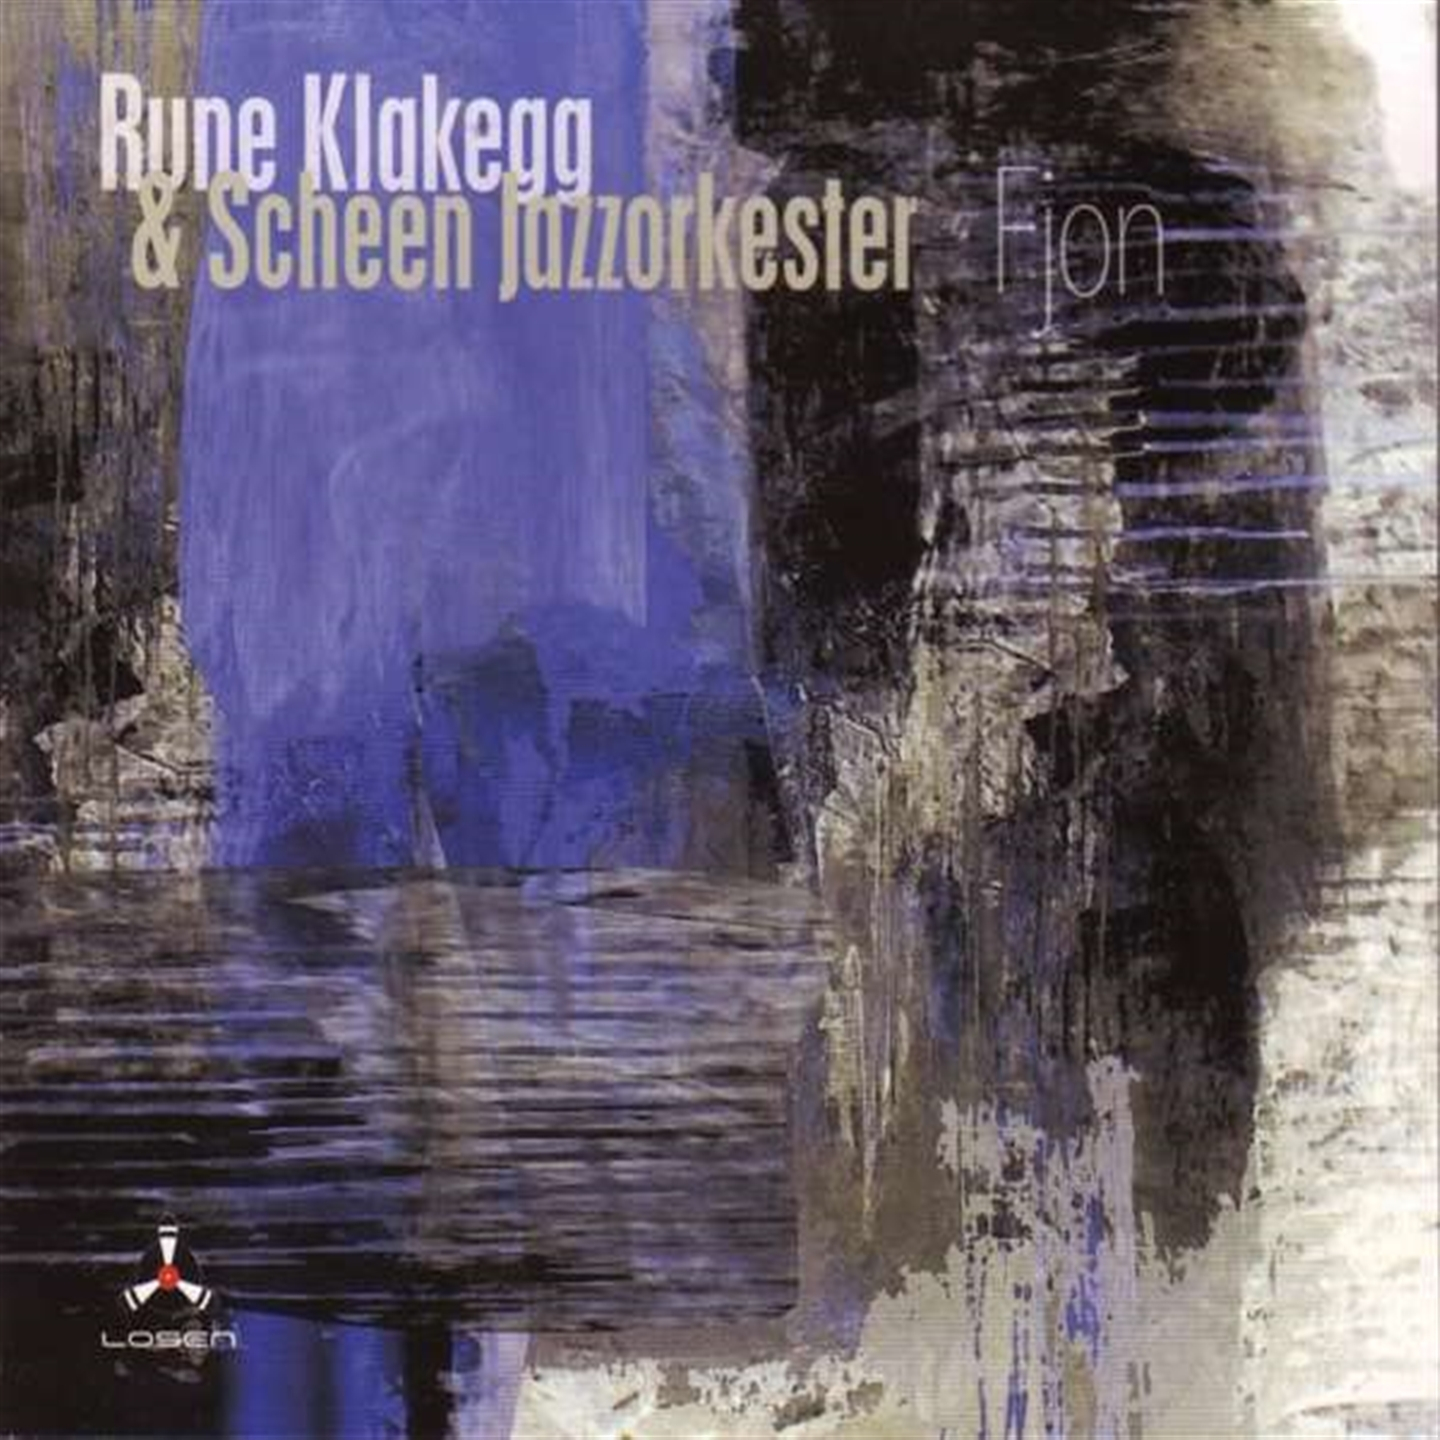 Scheen Jazzorkester & Rune Klakegg - Fjon - Afbeelding 1 van 1